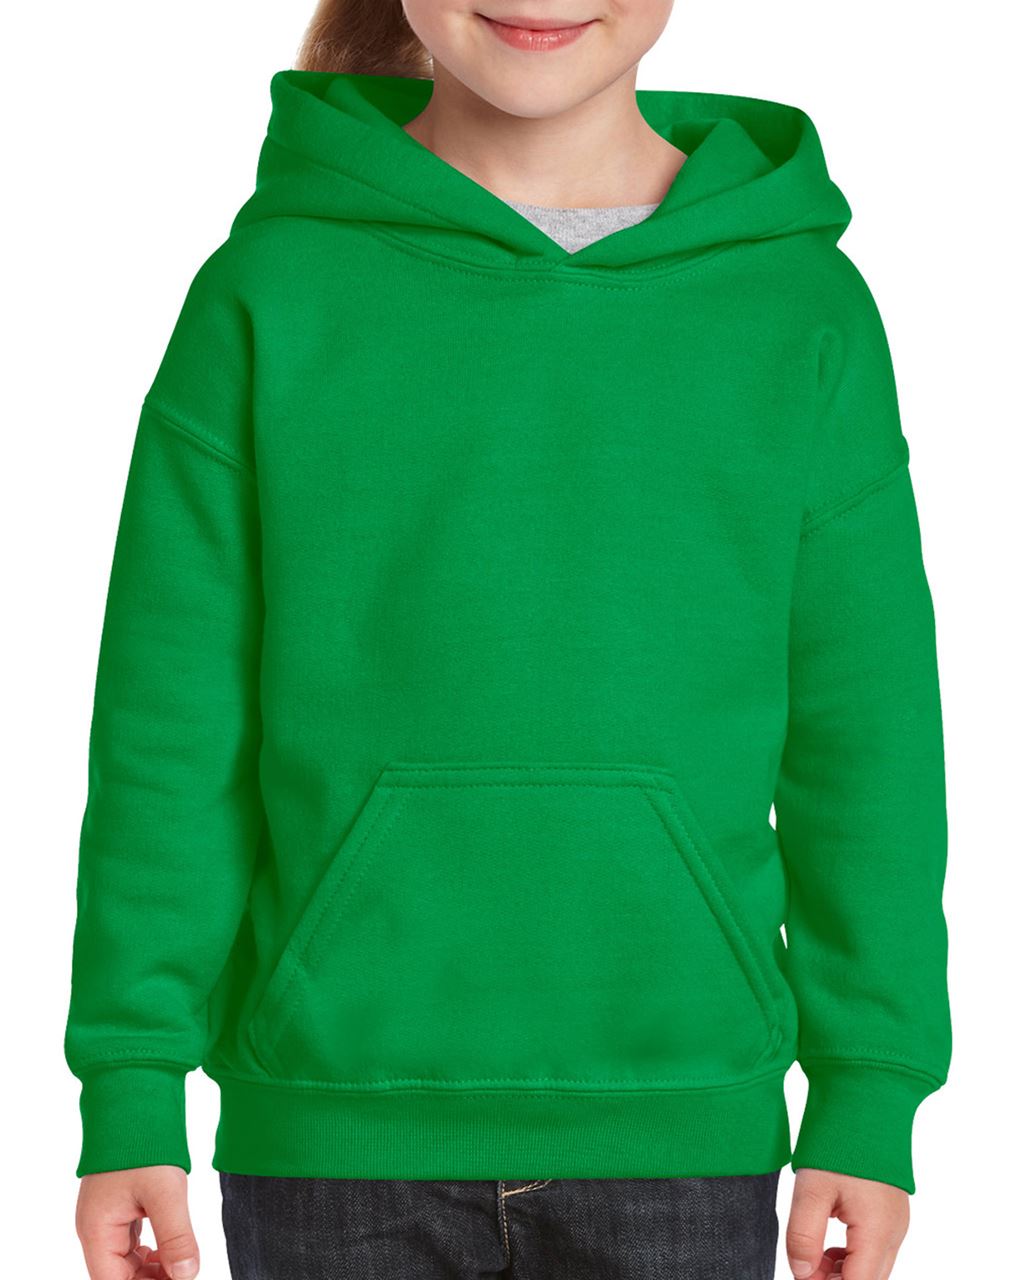 Dětská mikina s kapucí Heavy blend - irská zelená / XL